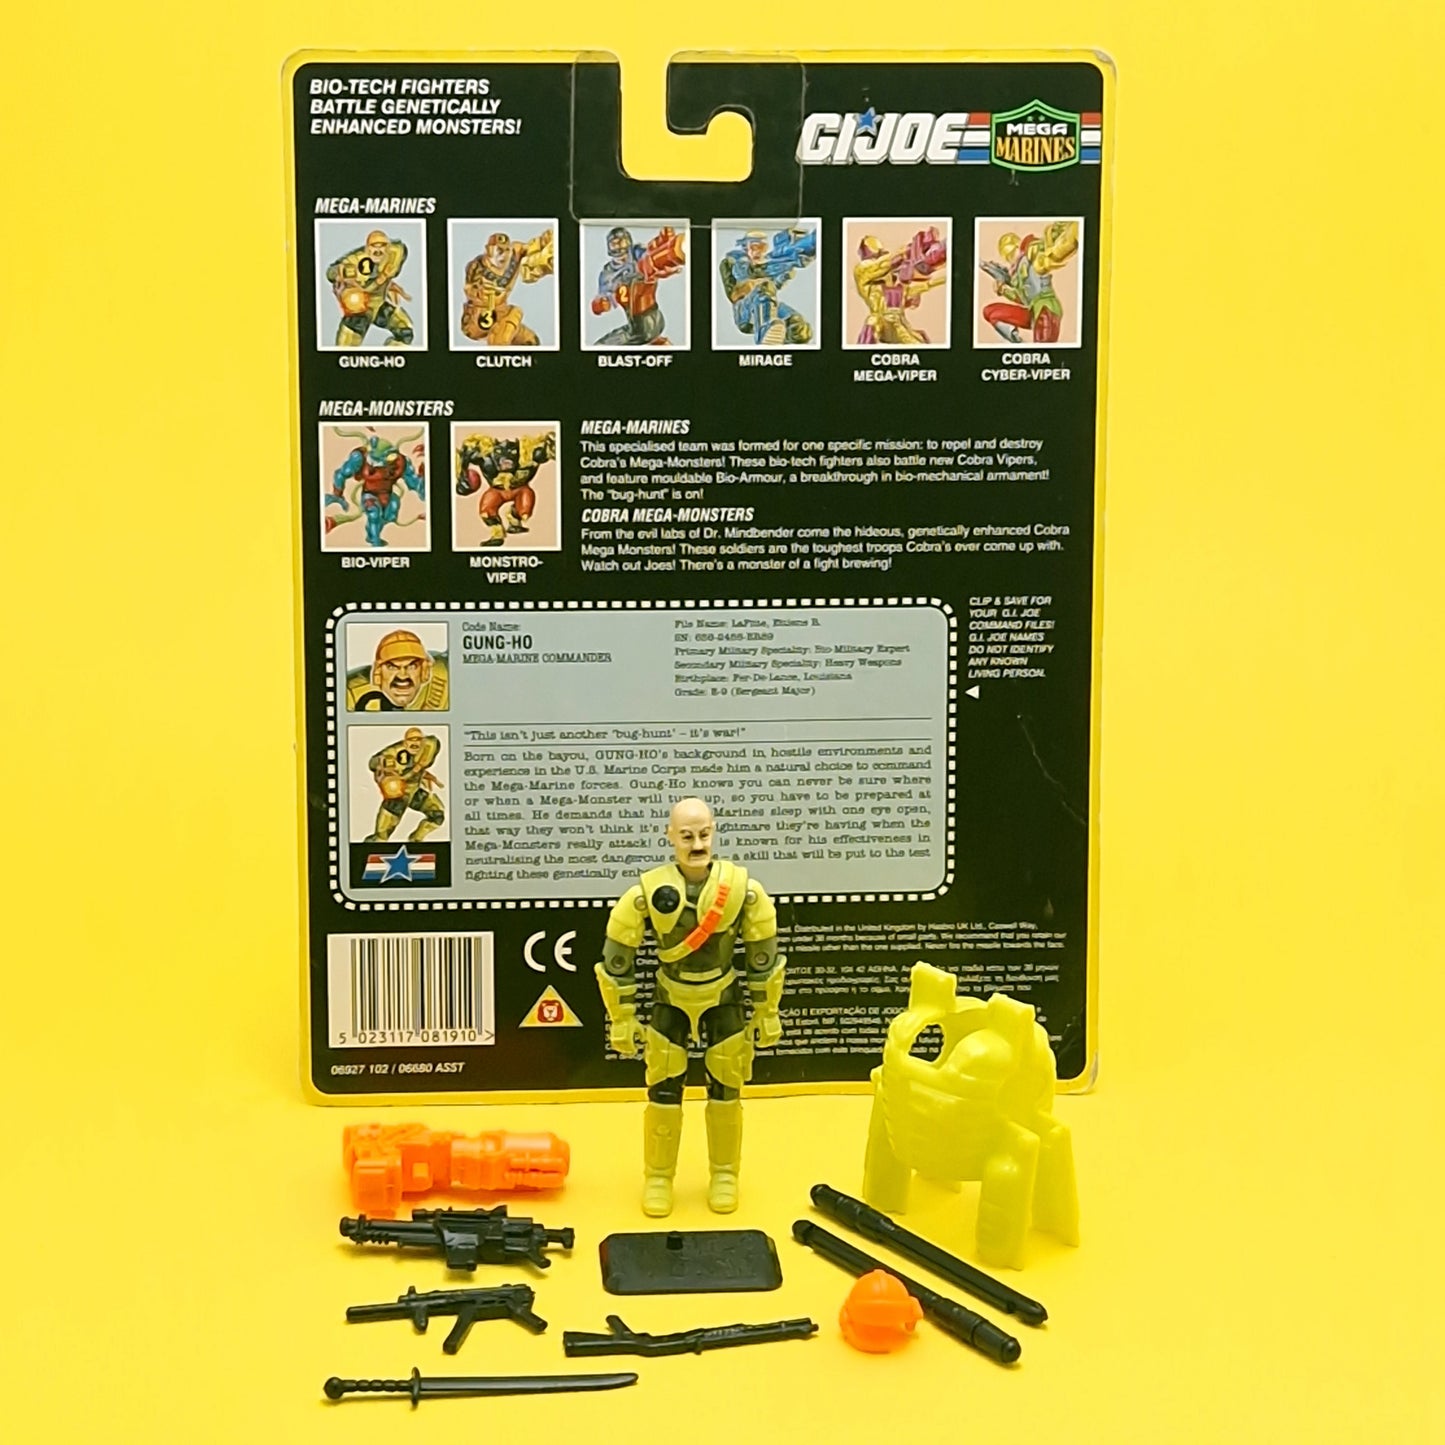 GI JOE ☆ Mega Marines GUNG HO Action Figure V5 ☆ Vintage Action Force Hasbro 1993 Bio Card